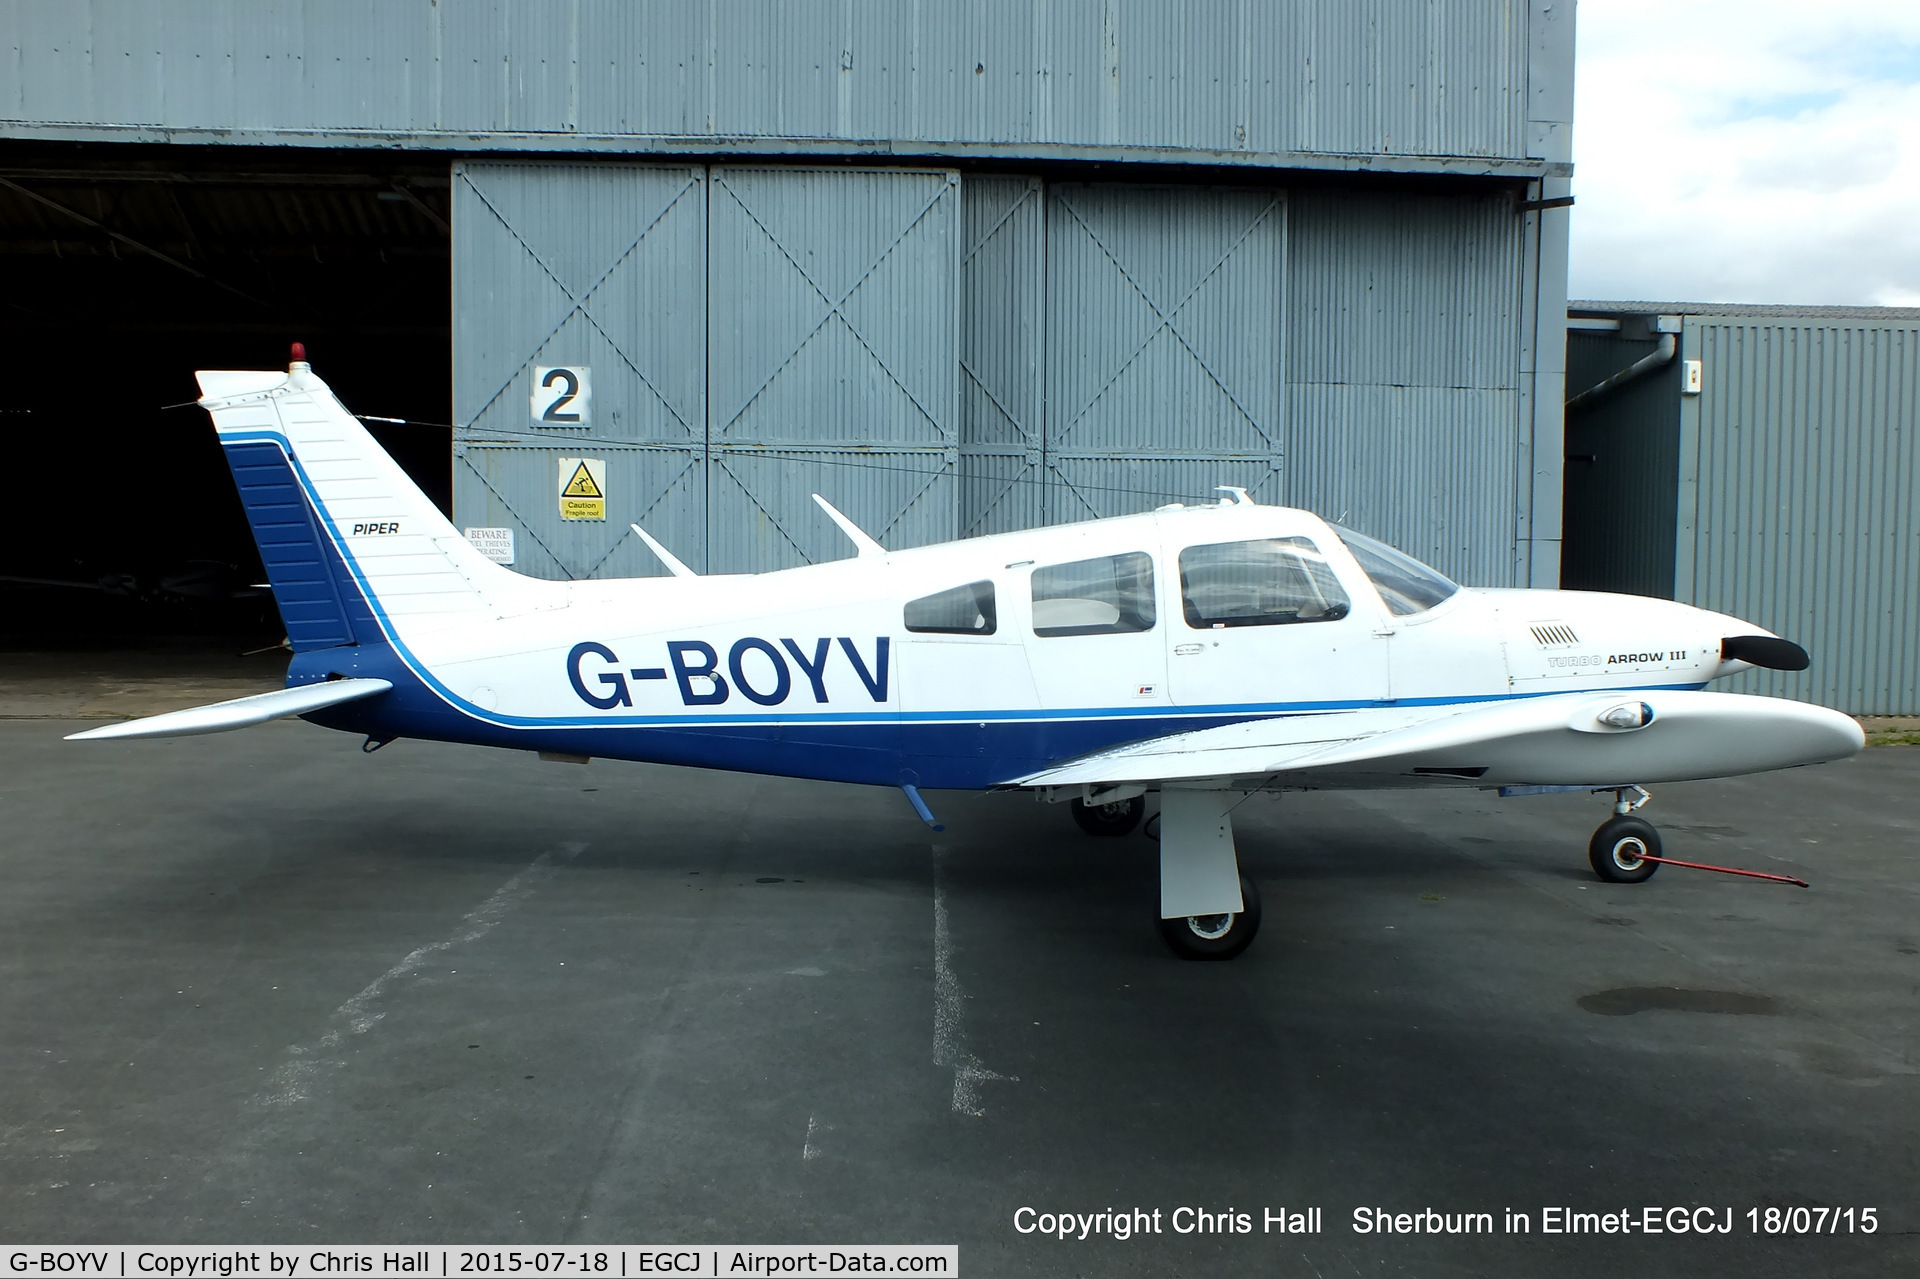 G-BOYV, 1977 Piper PA-28R-201T Turbo Cherokee Arrow III C/N 28R-7703014, at Sherburn in Elmet